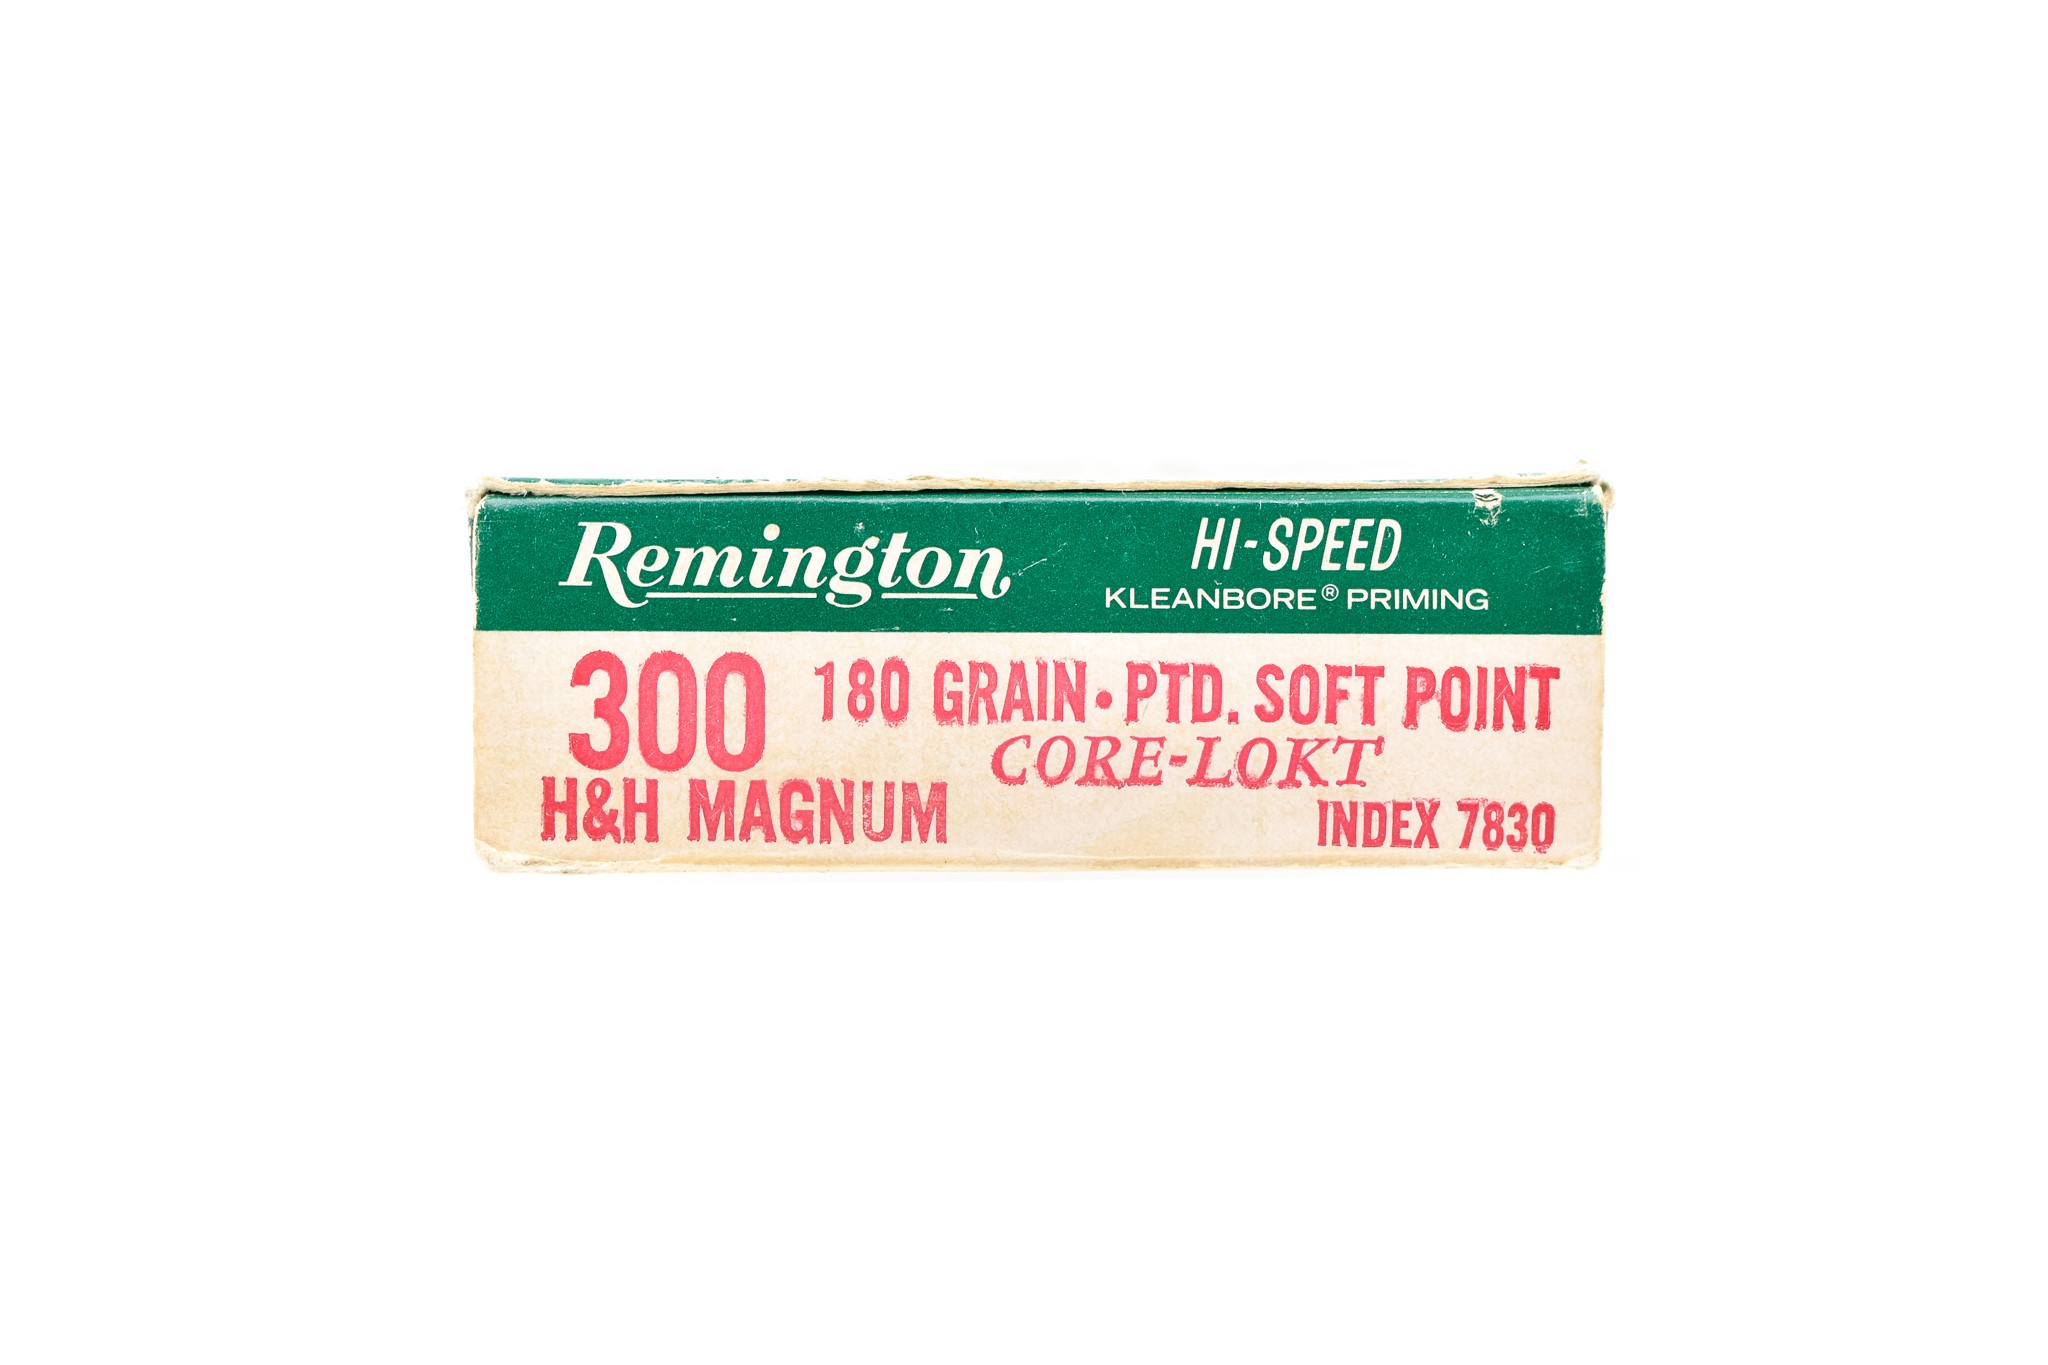 REM-UMC 300 H&H MAGNUM MAG   Cartridge  Hat or Jacket  Pin  Tie Tac Bullet Ammo 